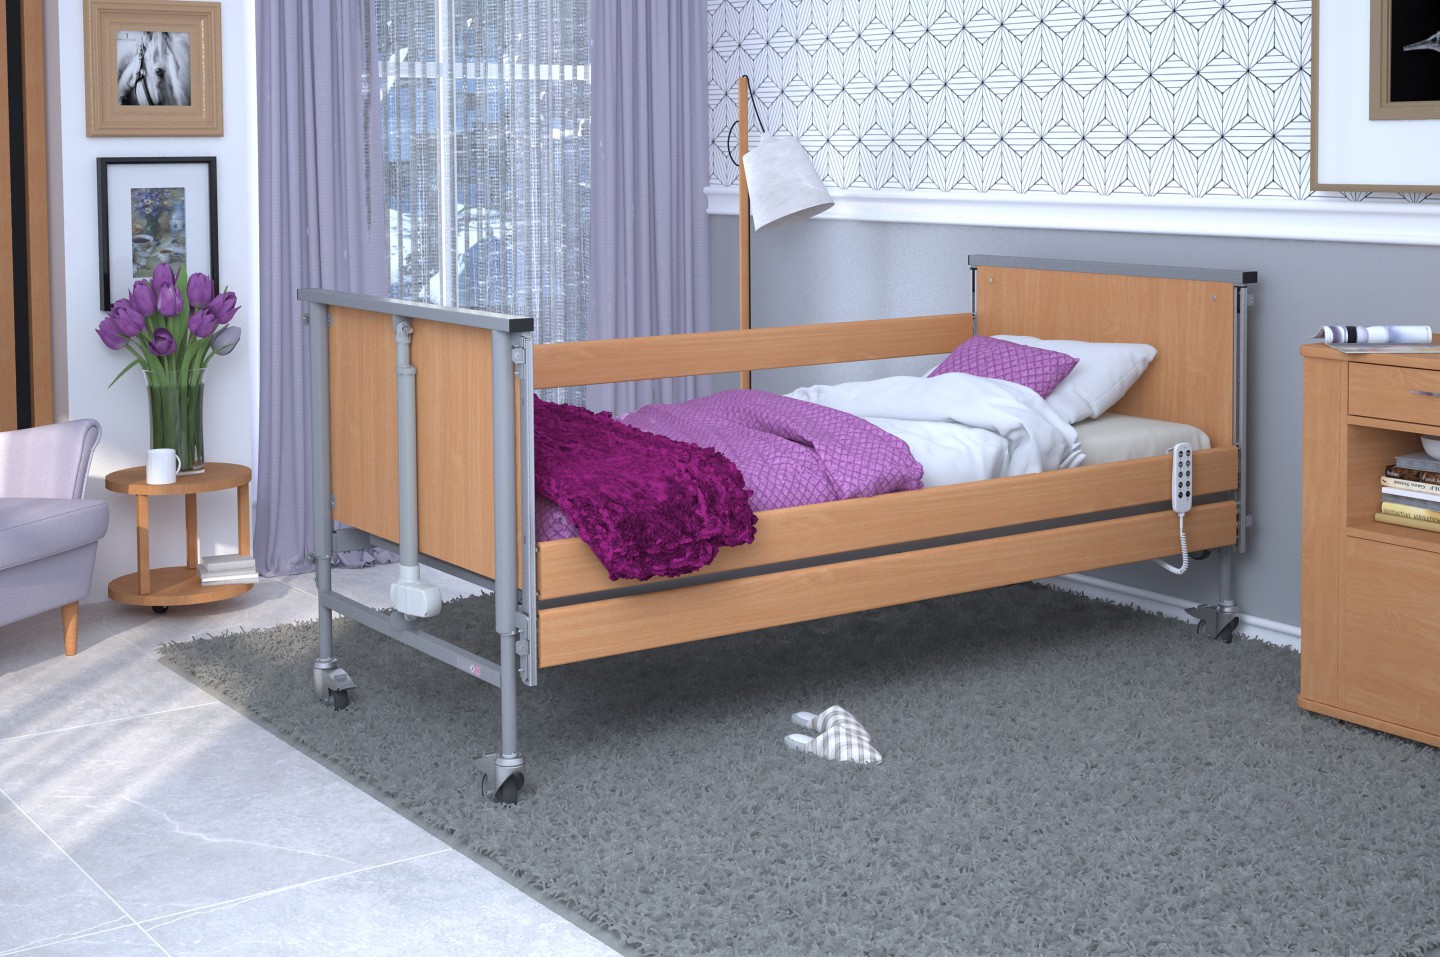 Łóżko rehabilitacyjne TAURUS 2 regulowane RehaBed : Rodzaj leża - Drewniane, Standardowe kolory ramy łóżka - Buk, Stolik typu Tablet: - Tak, Wysięgnik (max odciążenie 80 kg): - Nie